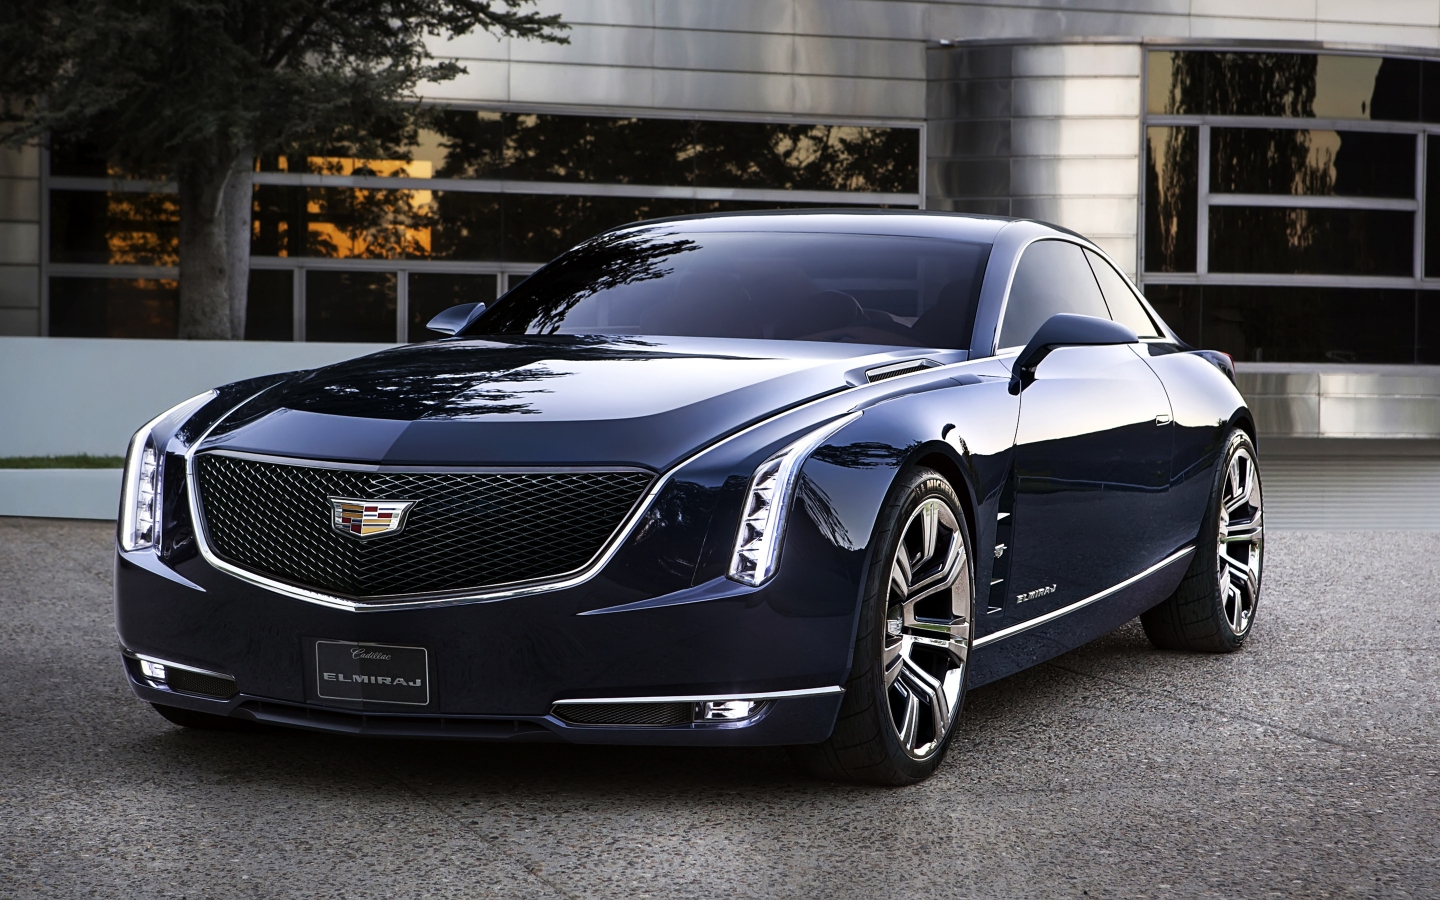 2013 Cadillac Elmiraj Concept for 1440 x 900 widescreen resolution